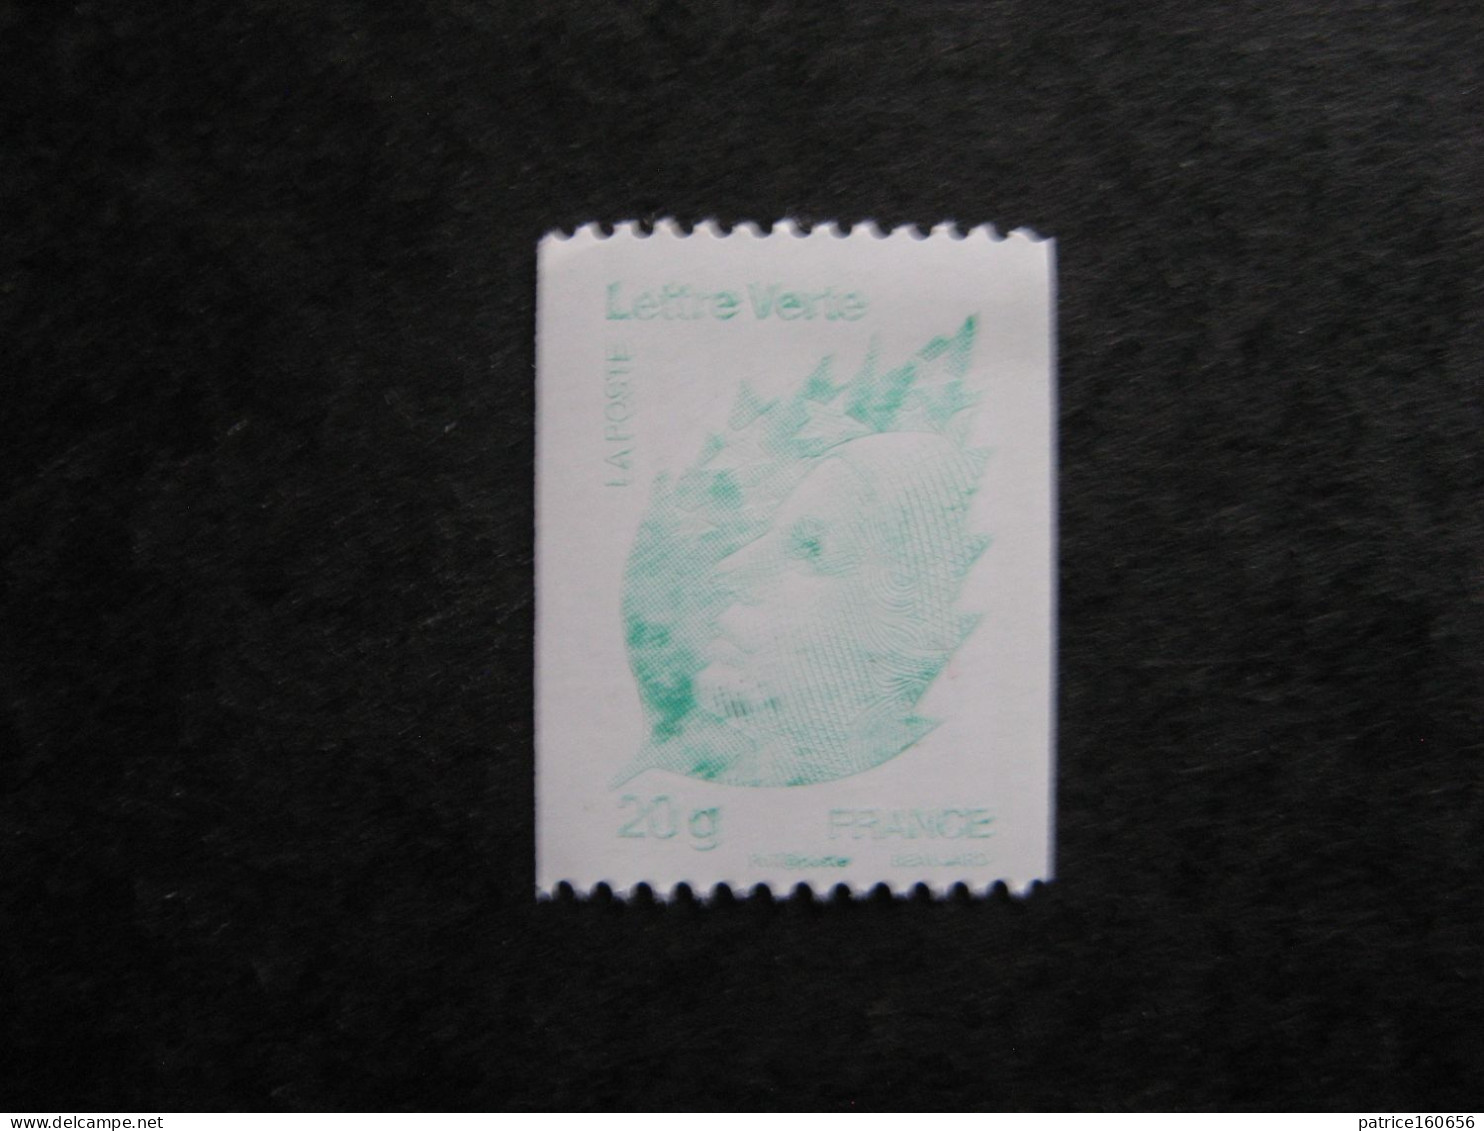 TB N° 4597, Impression Très Dèpouillée Avec Bande De Phosphore . Neuf XX. - Unused Stamps